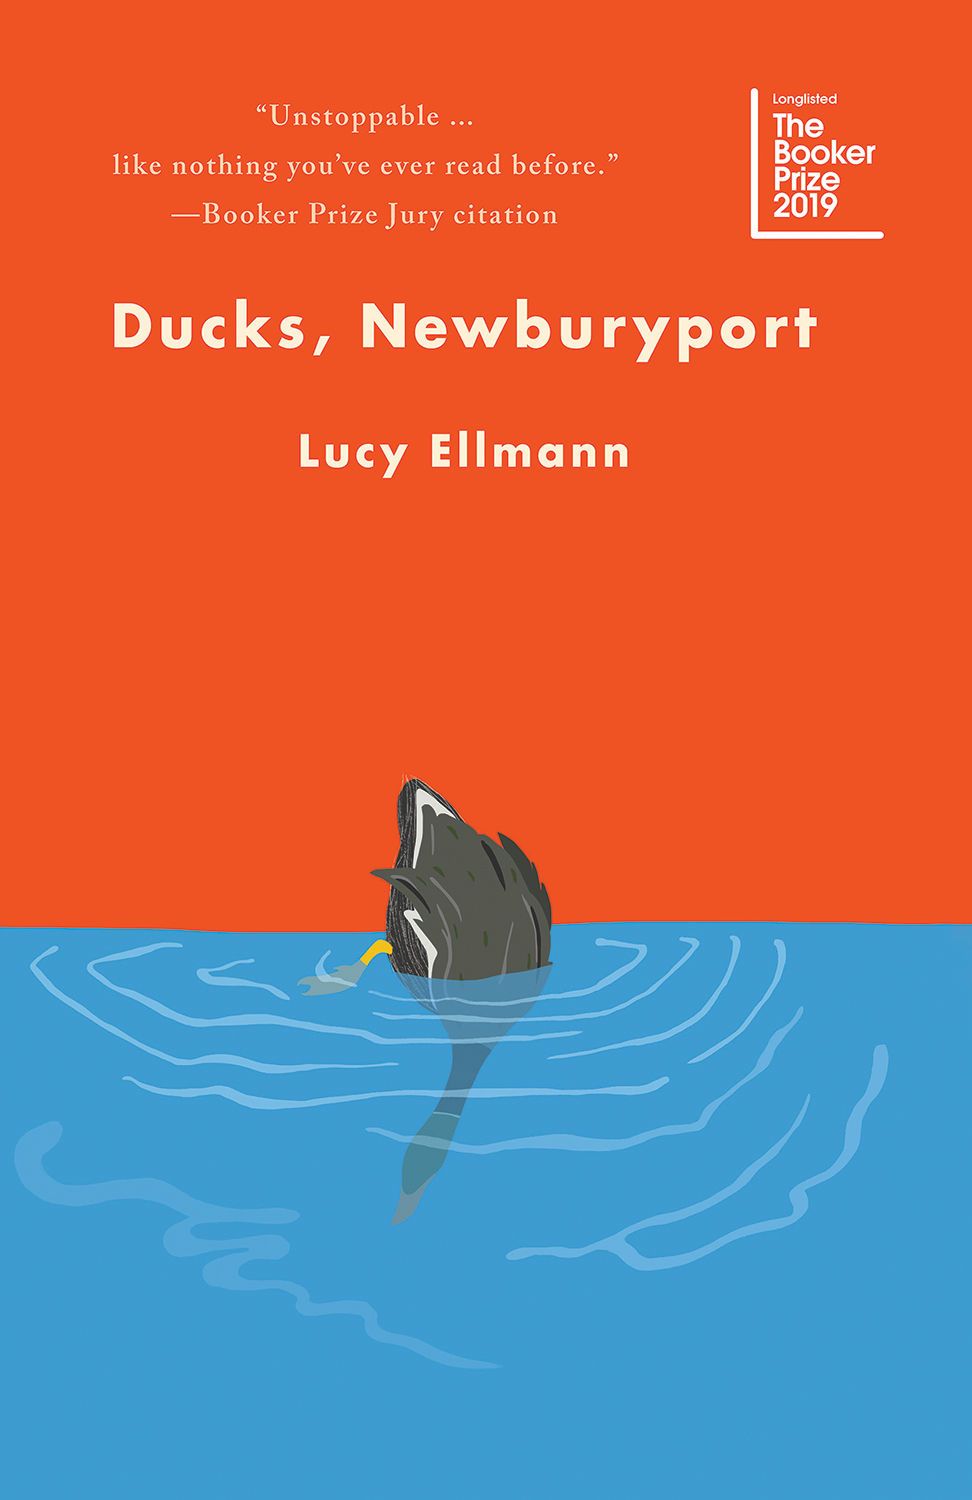 Books in Brief: Ducks, Newburyport